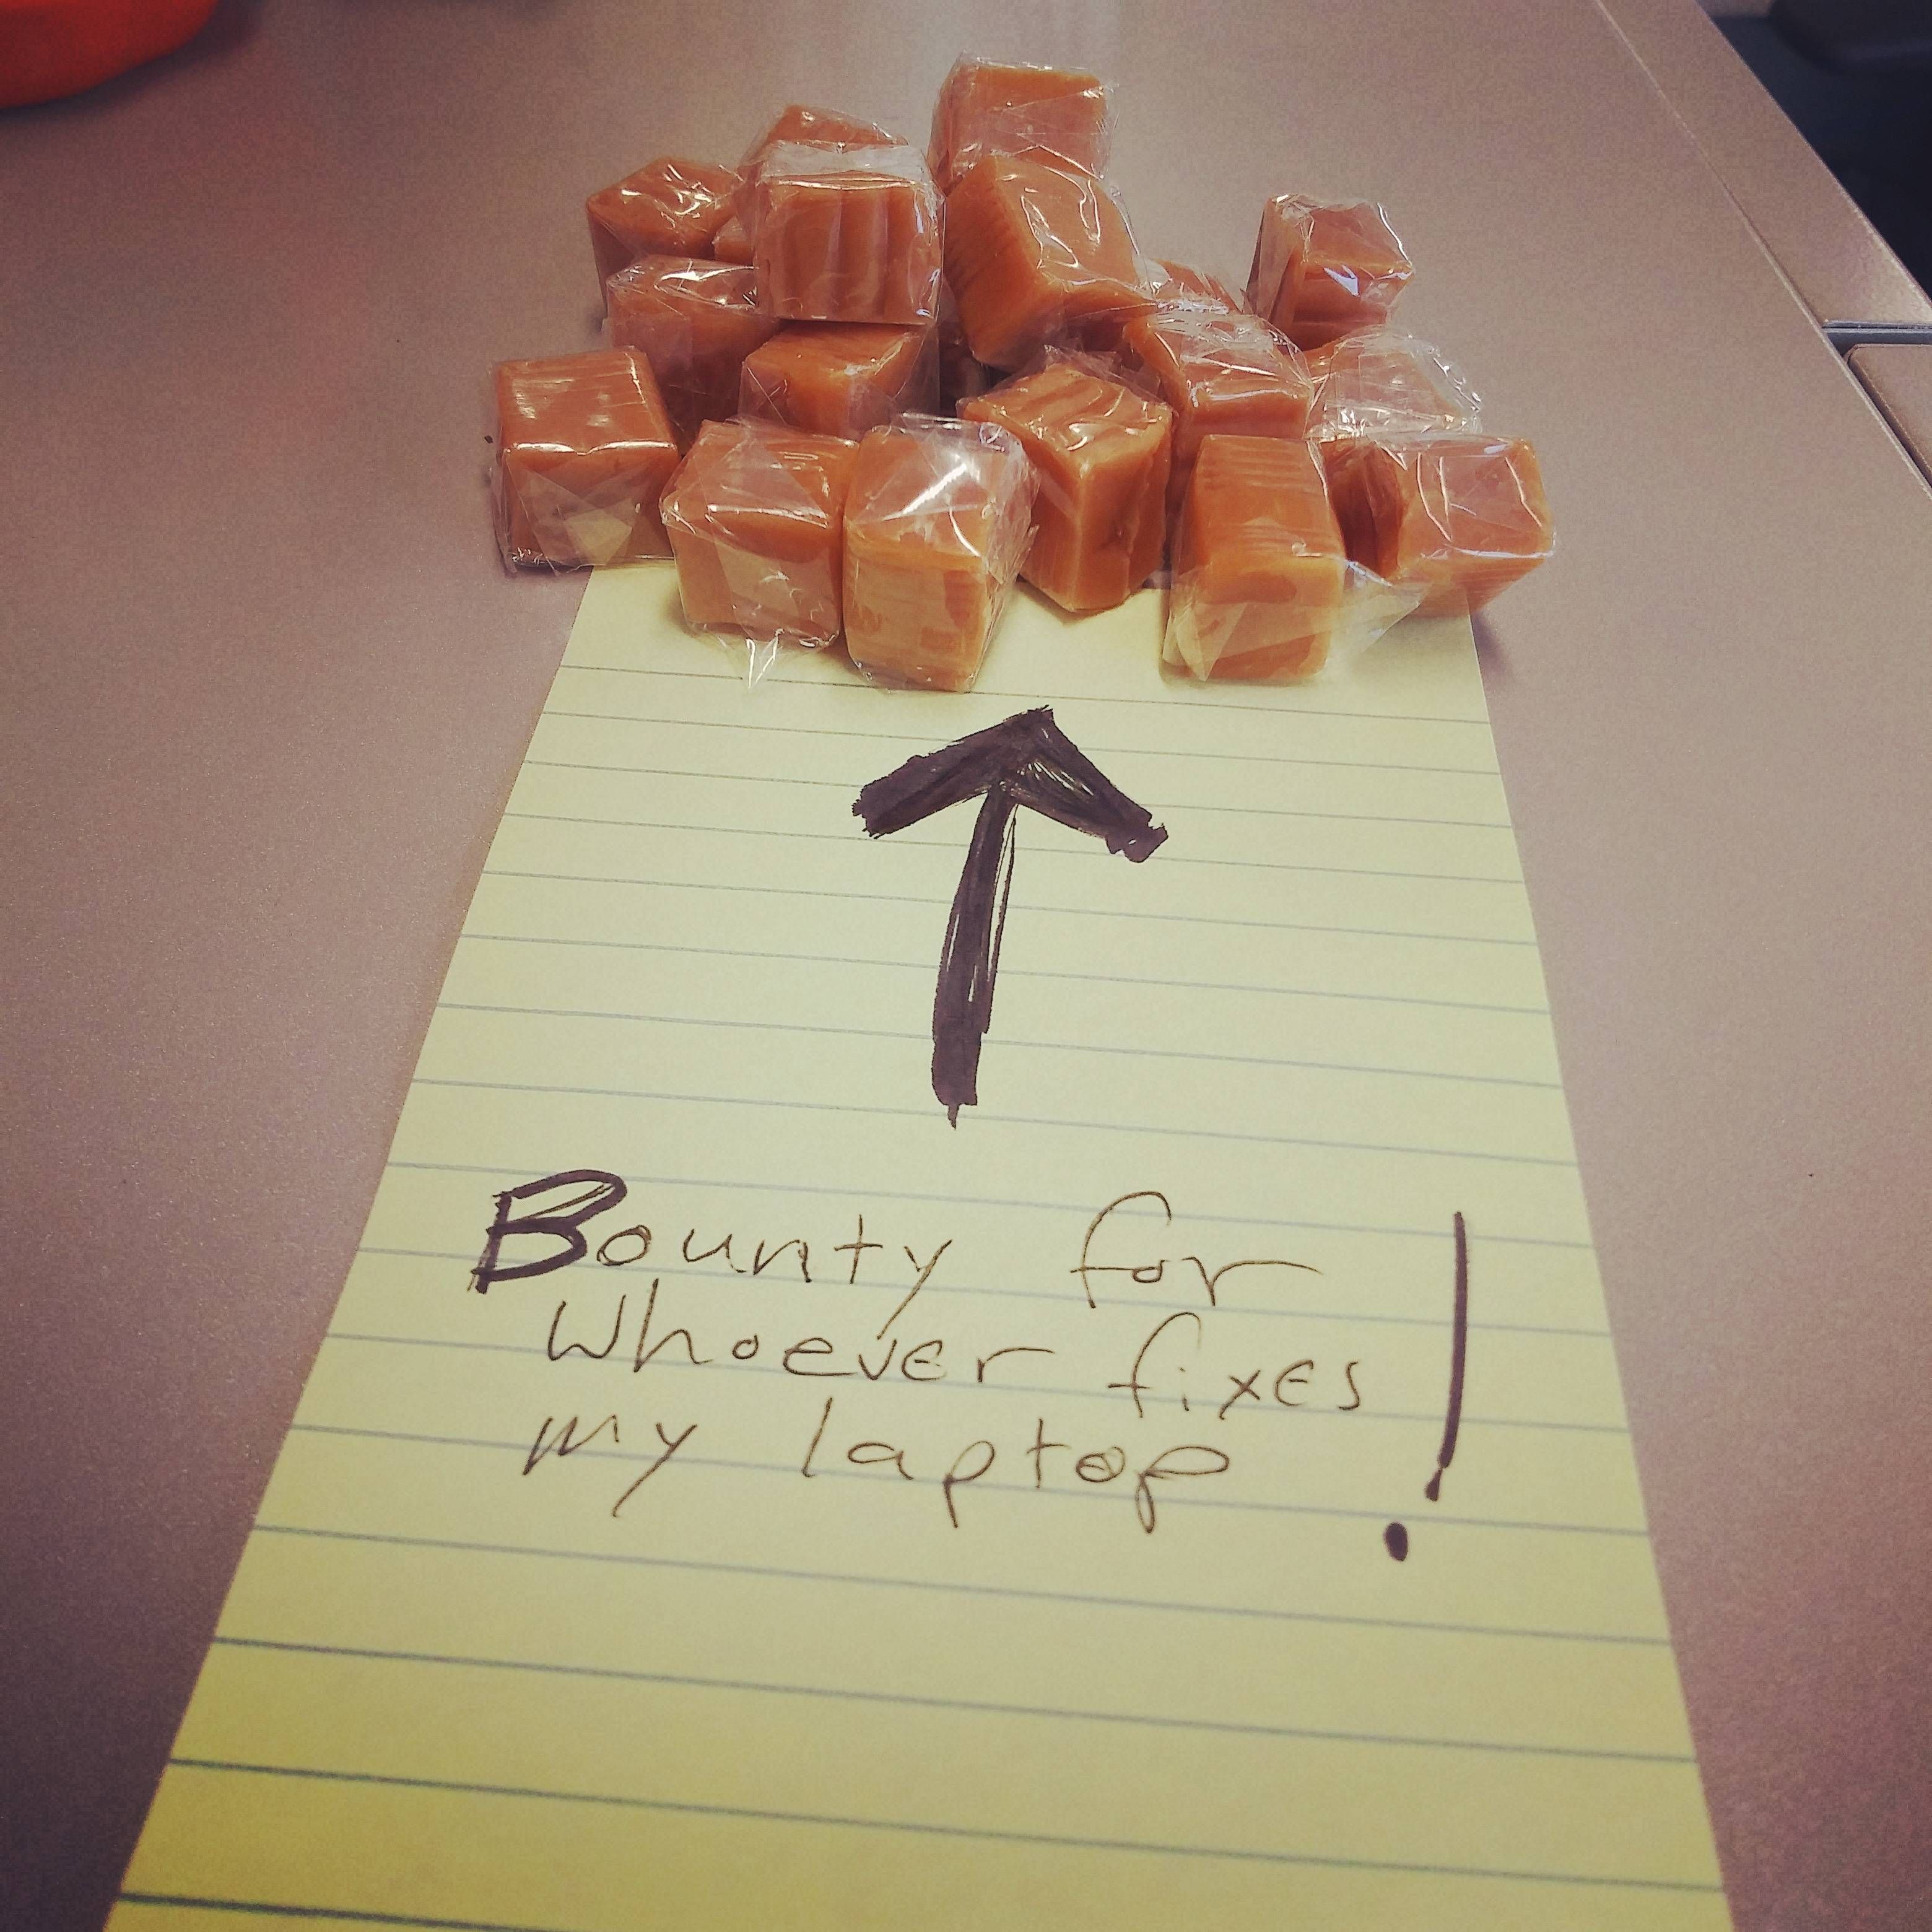 TIL our IT guy loves caramels.